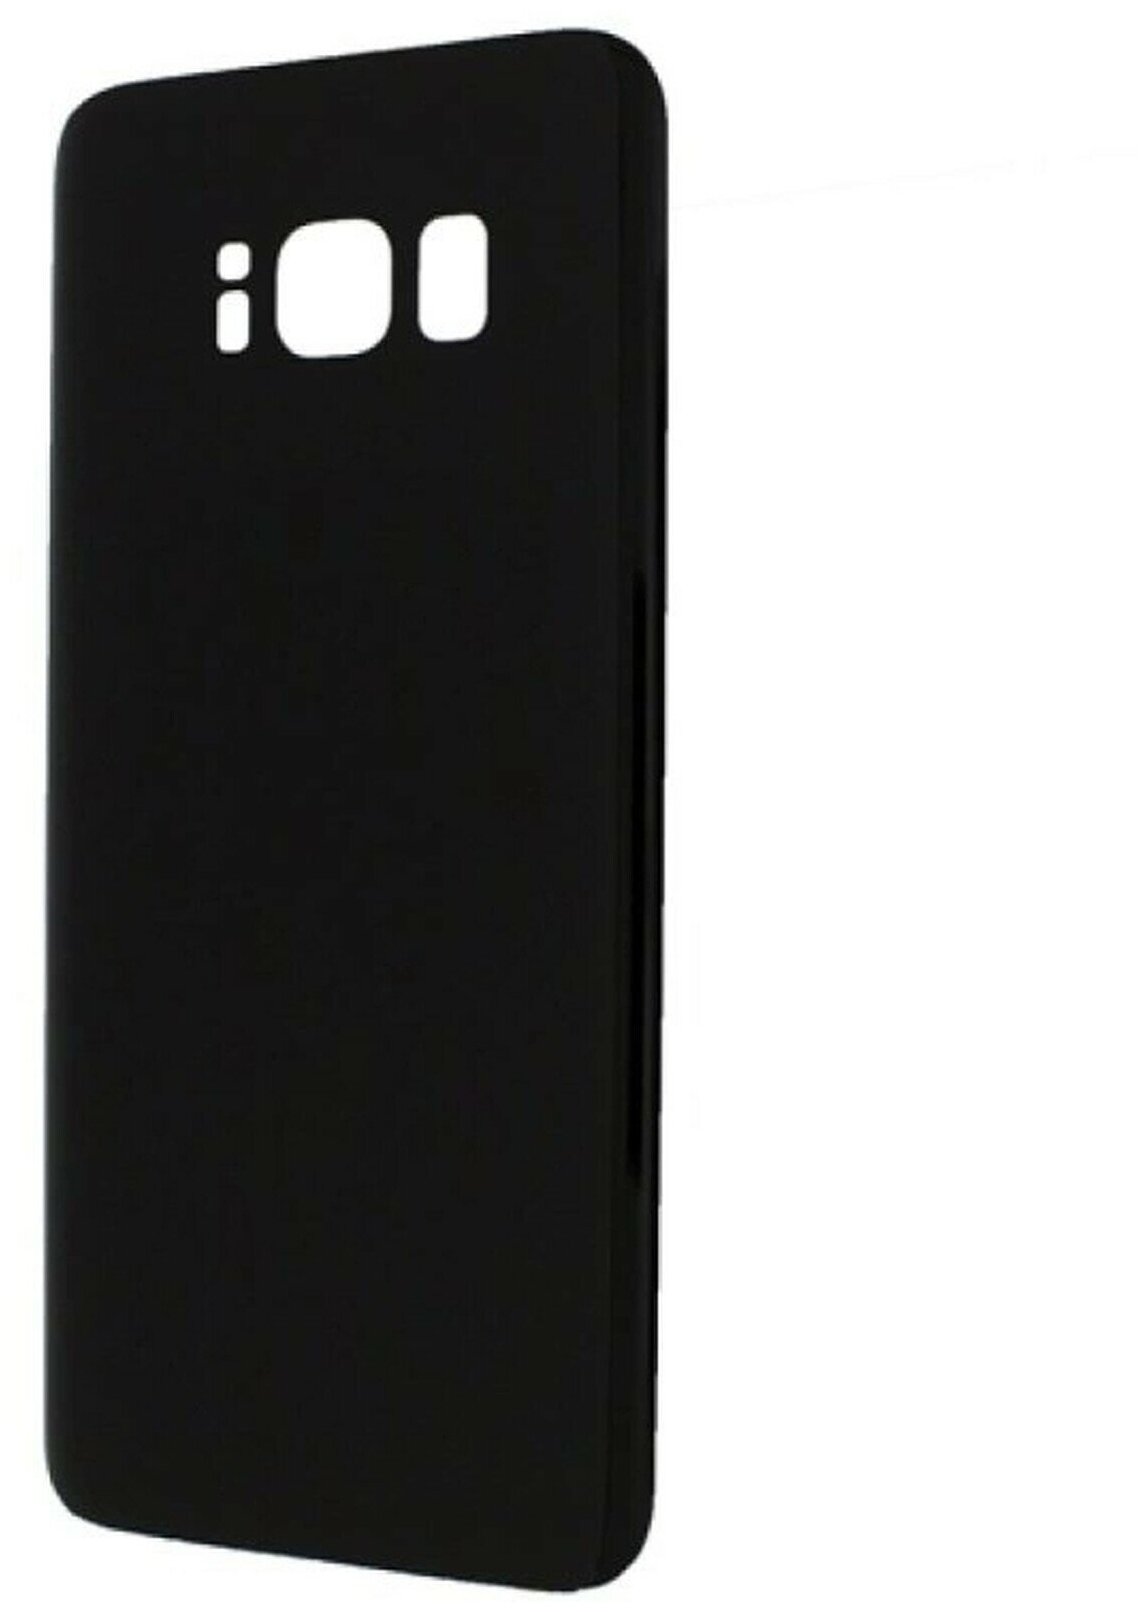 Задняя крышка для Samsung G950F (S8) Черный